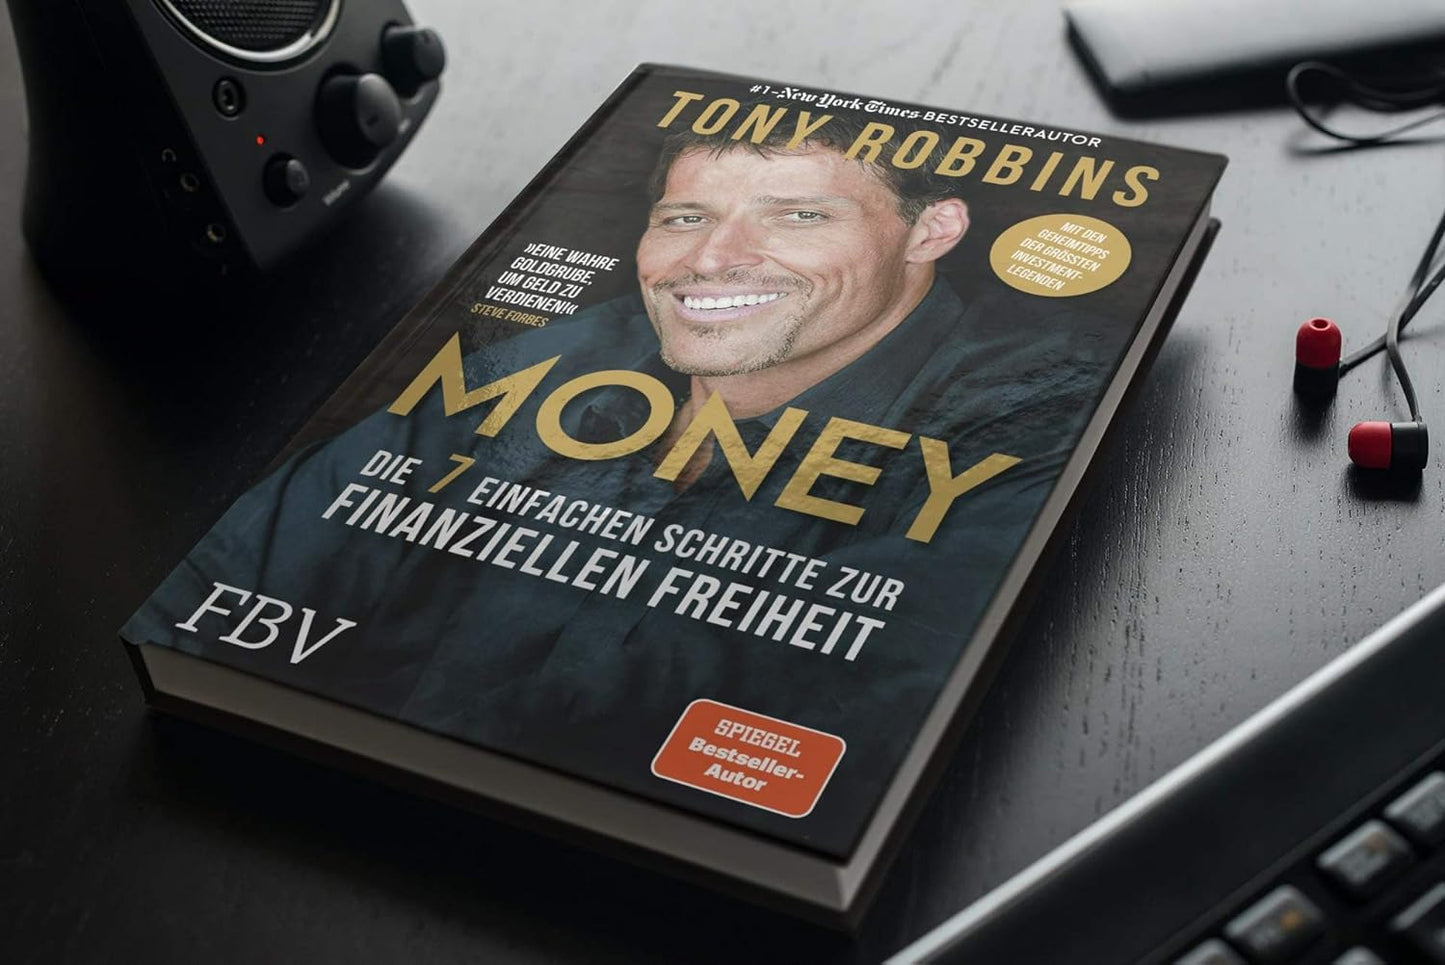 Money: Die 7 einfachen Schritte zur finanziellen Freiheit